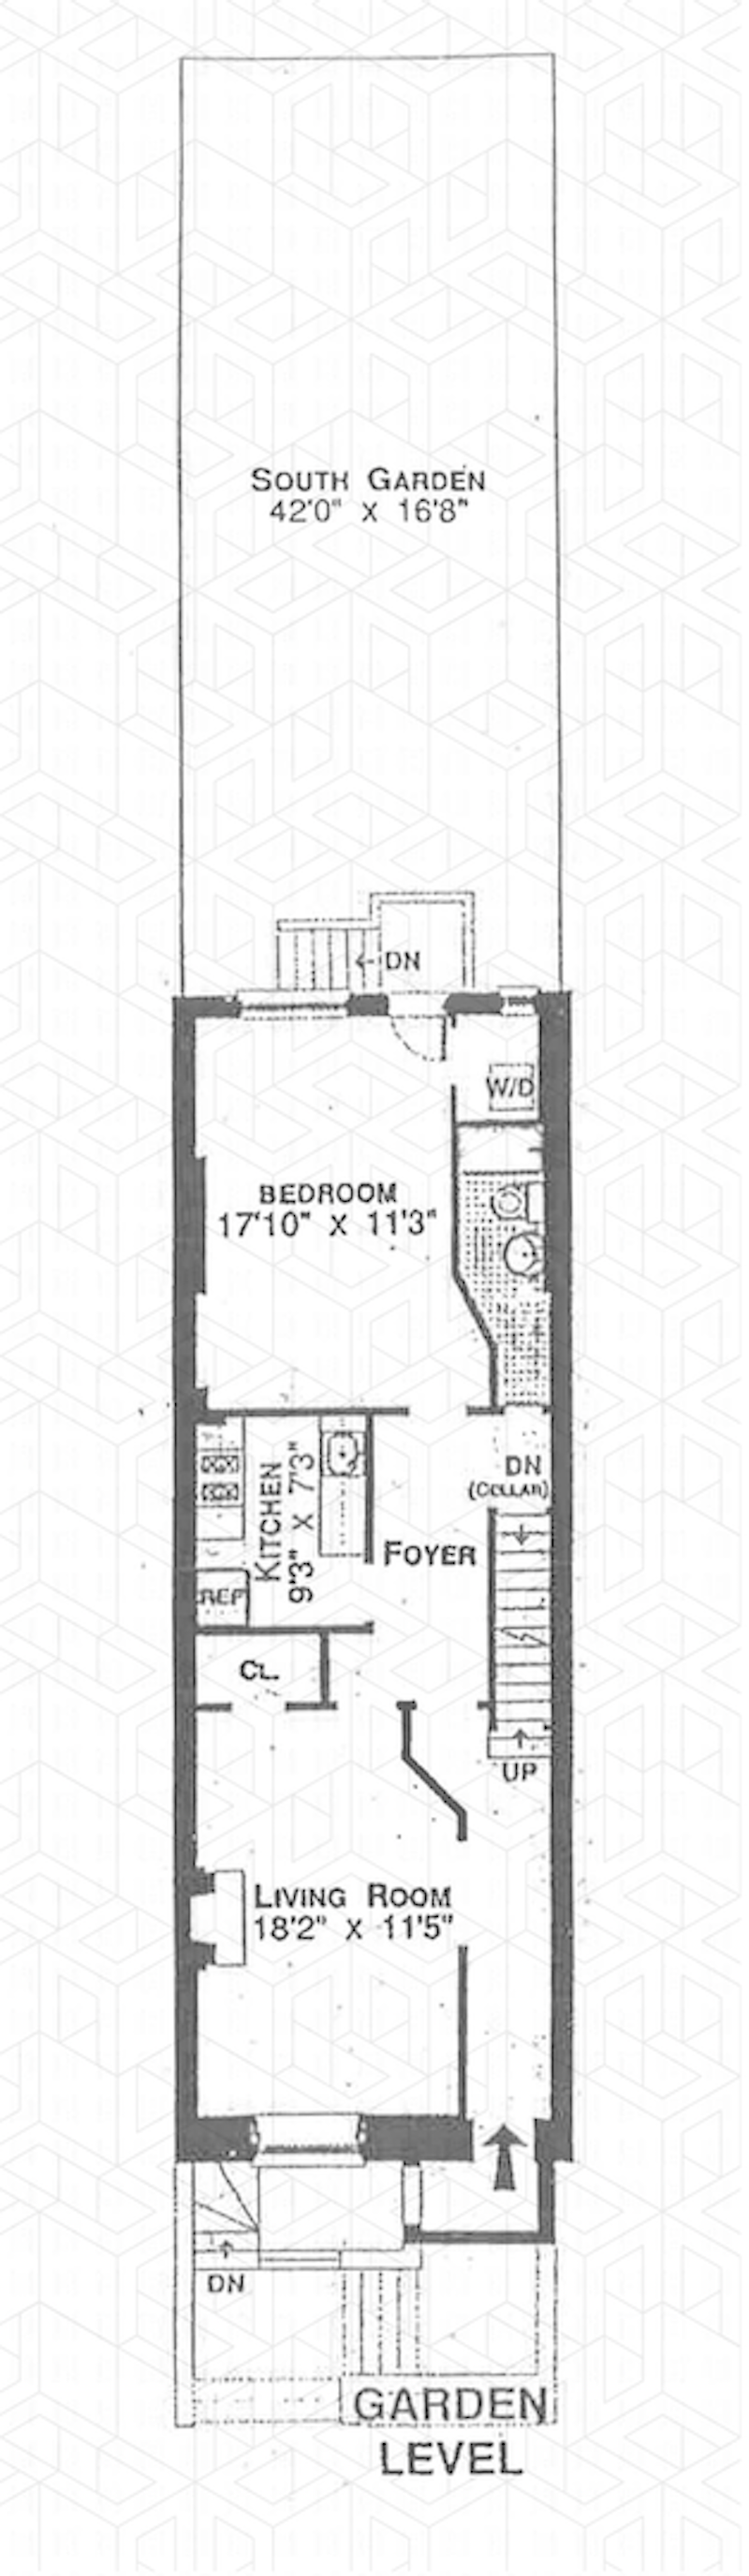 Floorplan for 312 West 115th Street, GARDEN